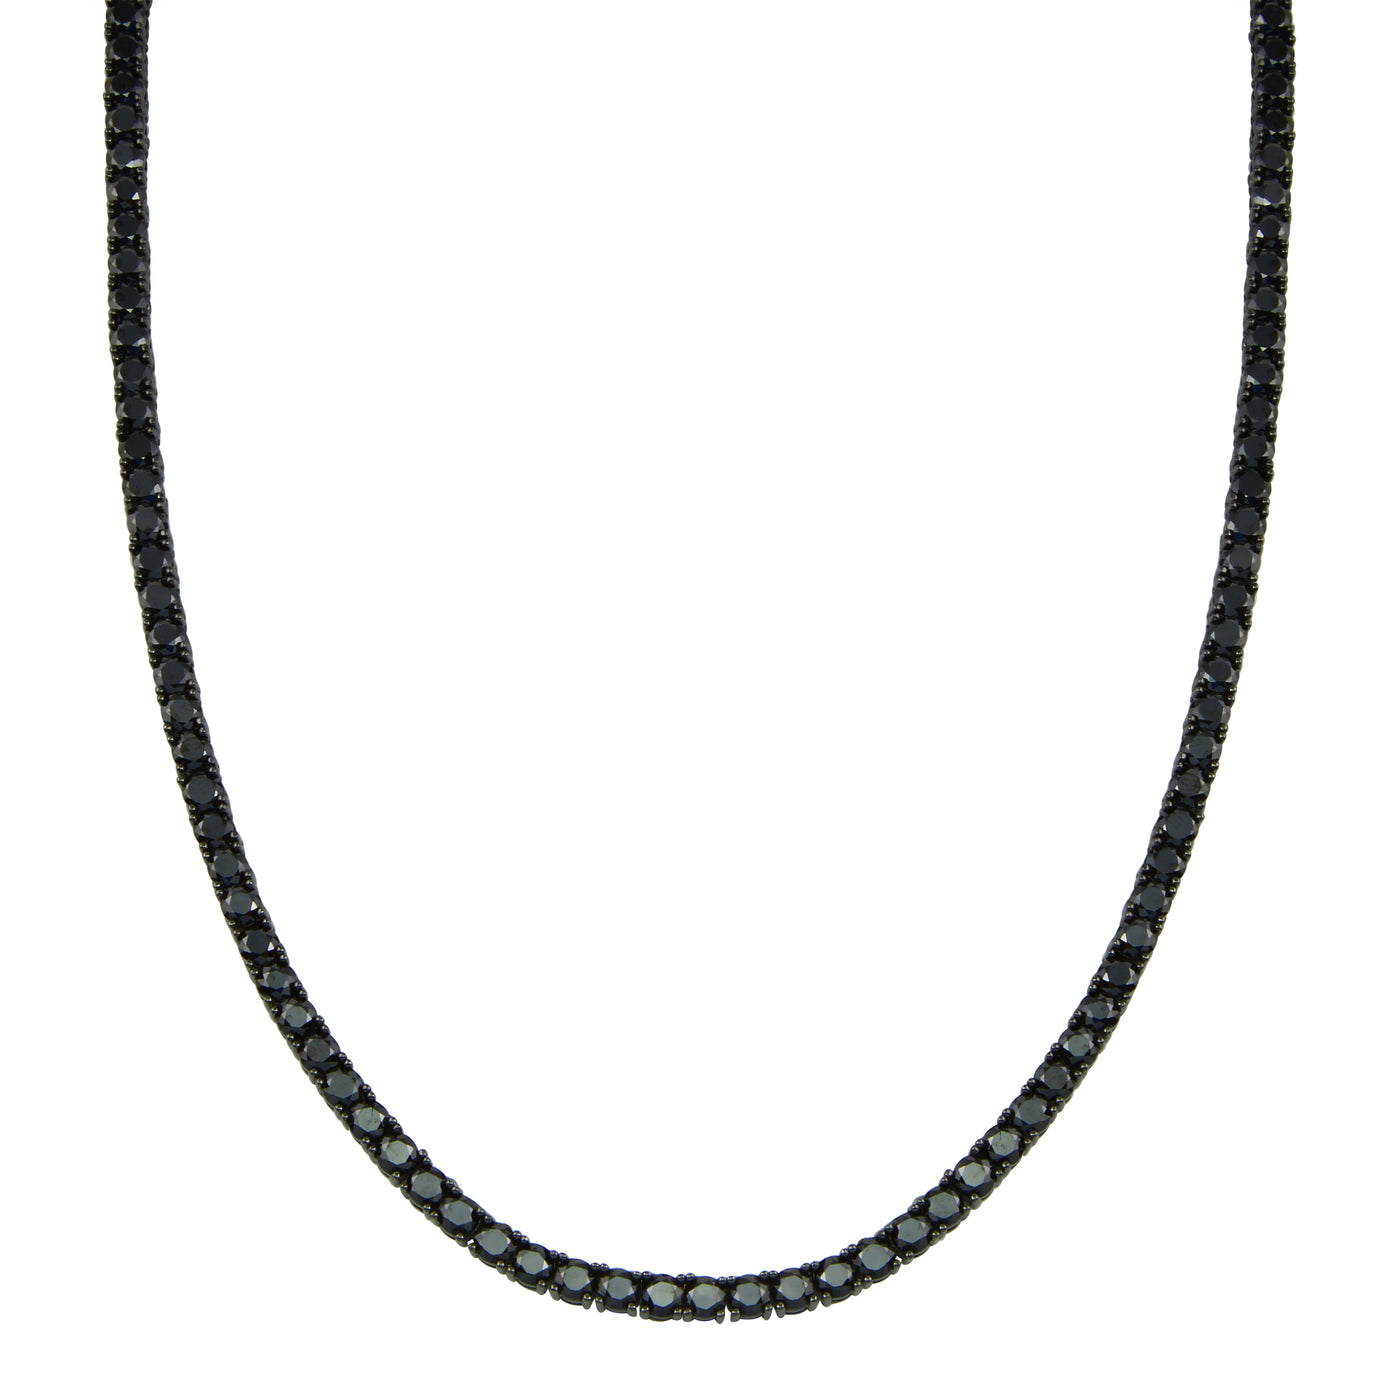 Jumbo Black on Black Tennis Necklace (unisex)